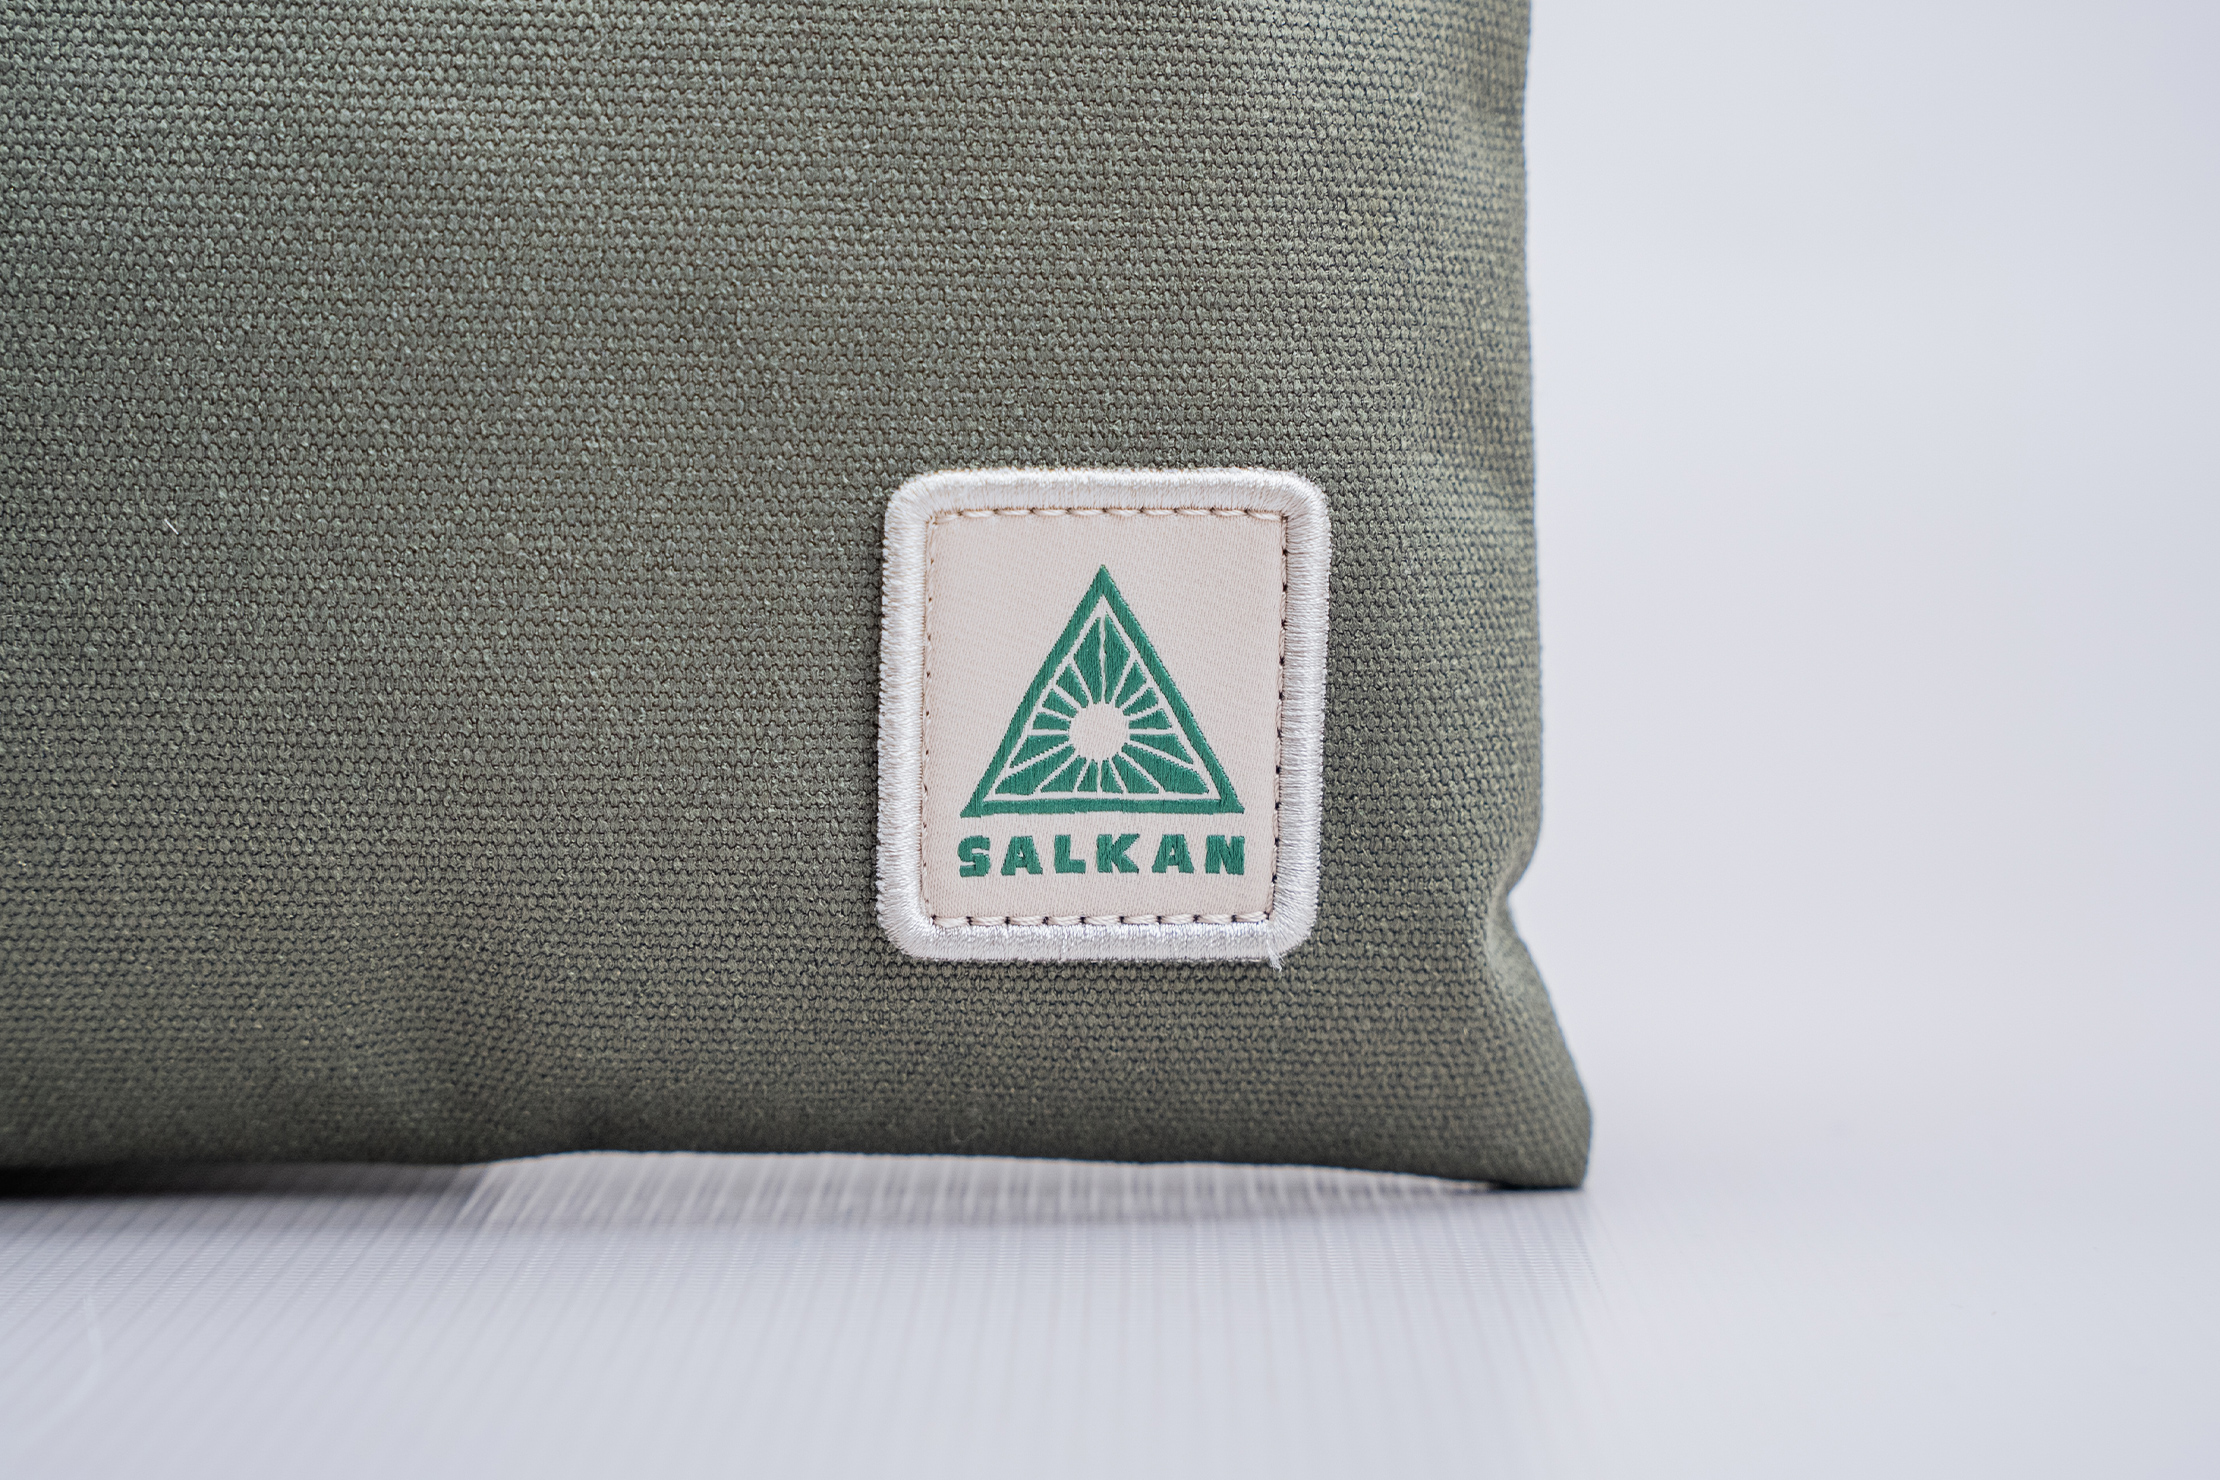 Salkan Tripper Sacoche Bag Brand